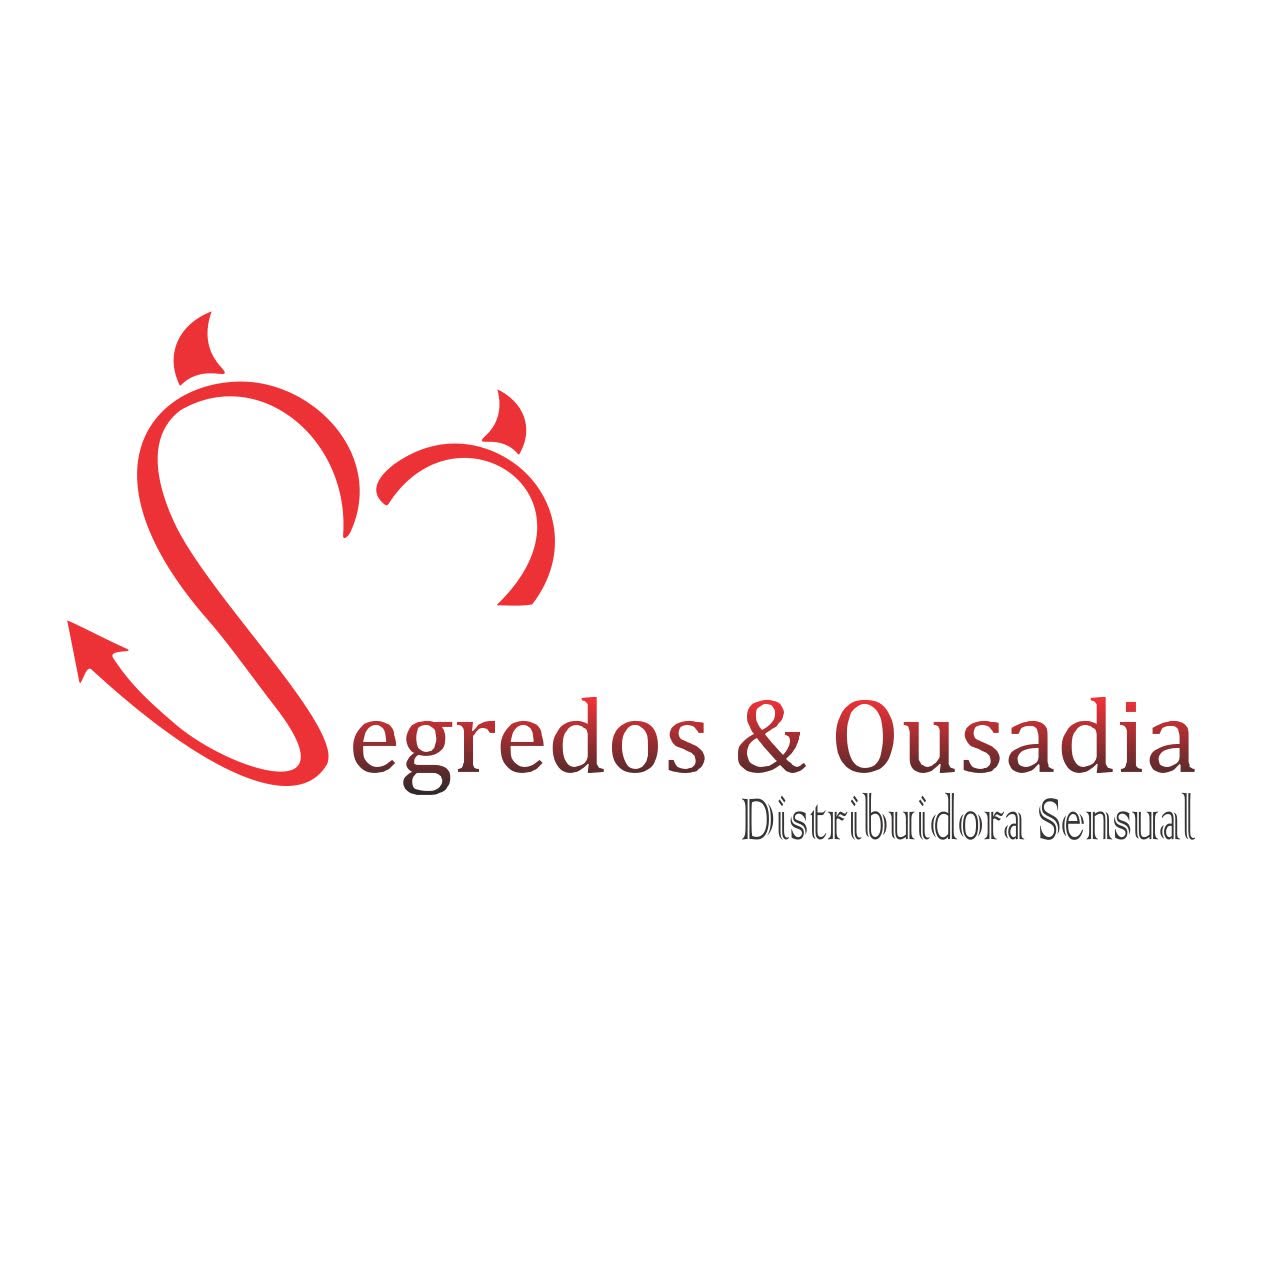 Segredos & Ousadia